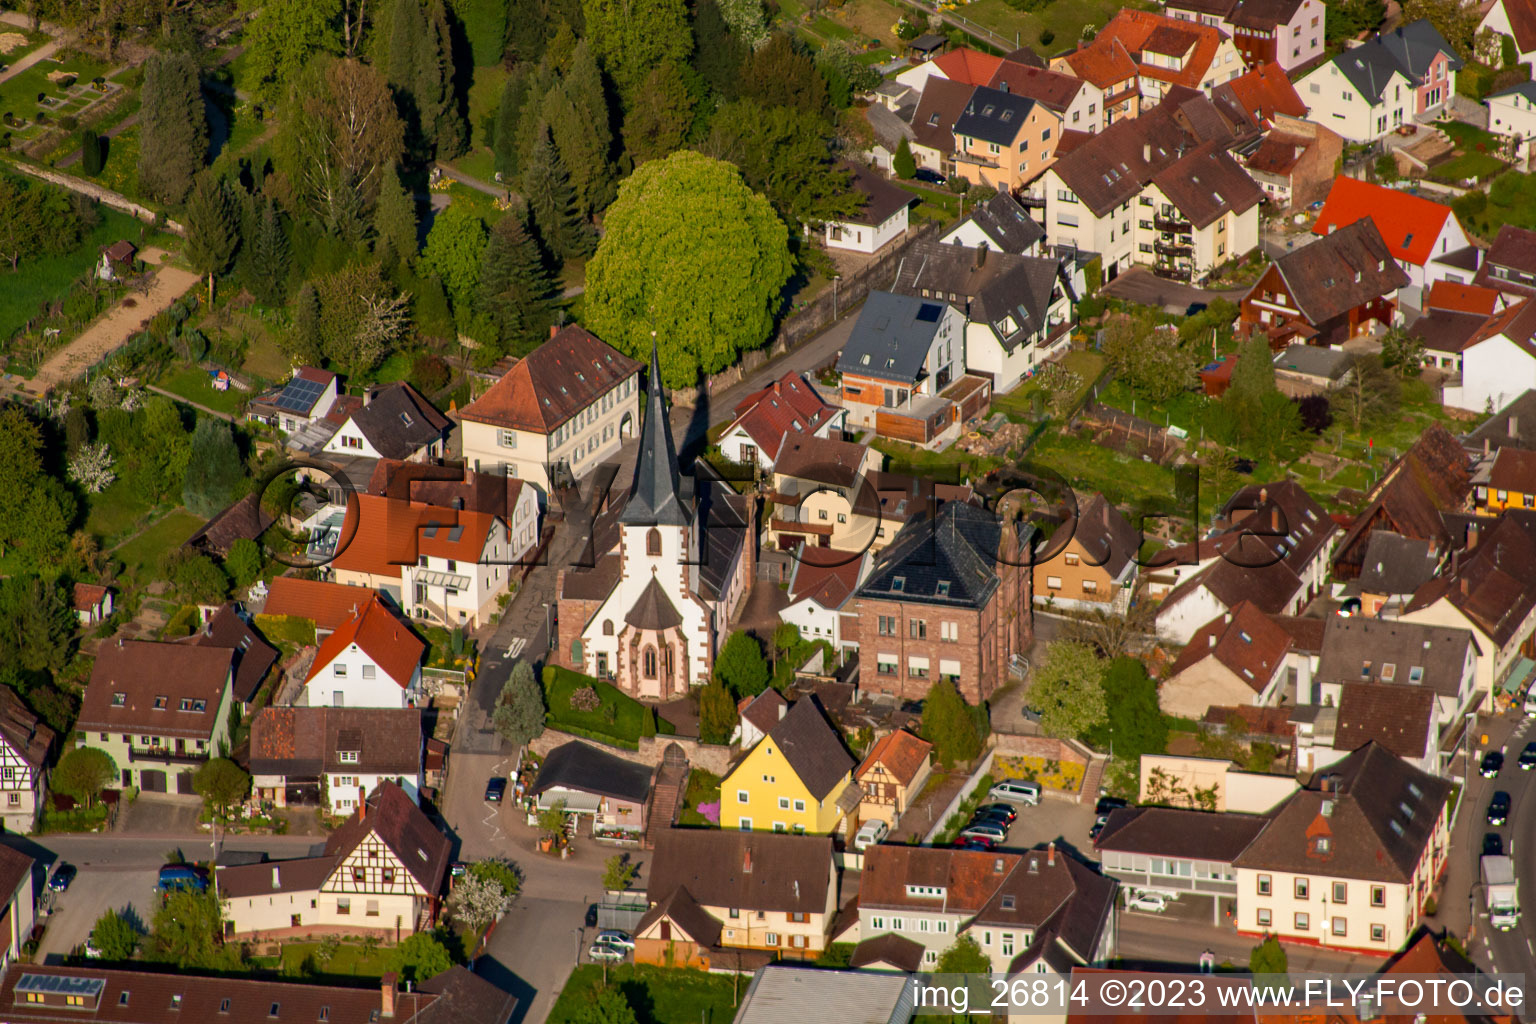 Vue aérienne de Communauté ecclésiale protestante à le quartier Söllingen in Pfinztal dans le département Bade-Wurtemberg, Allemagne